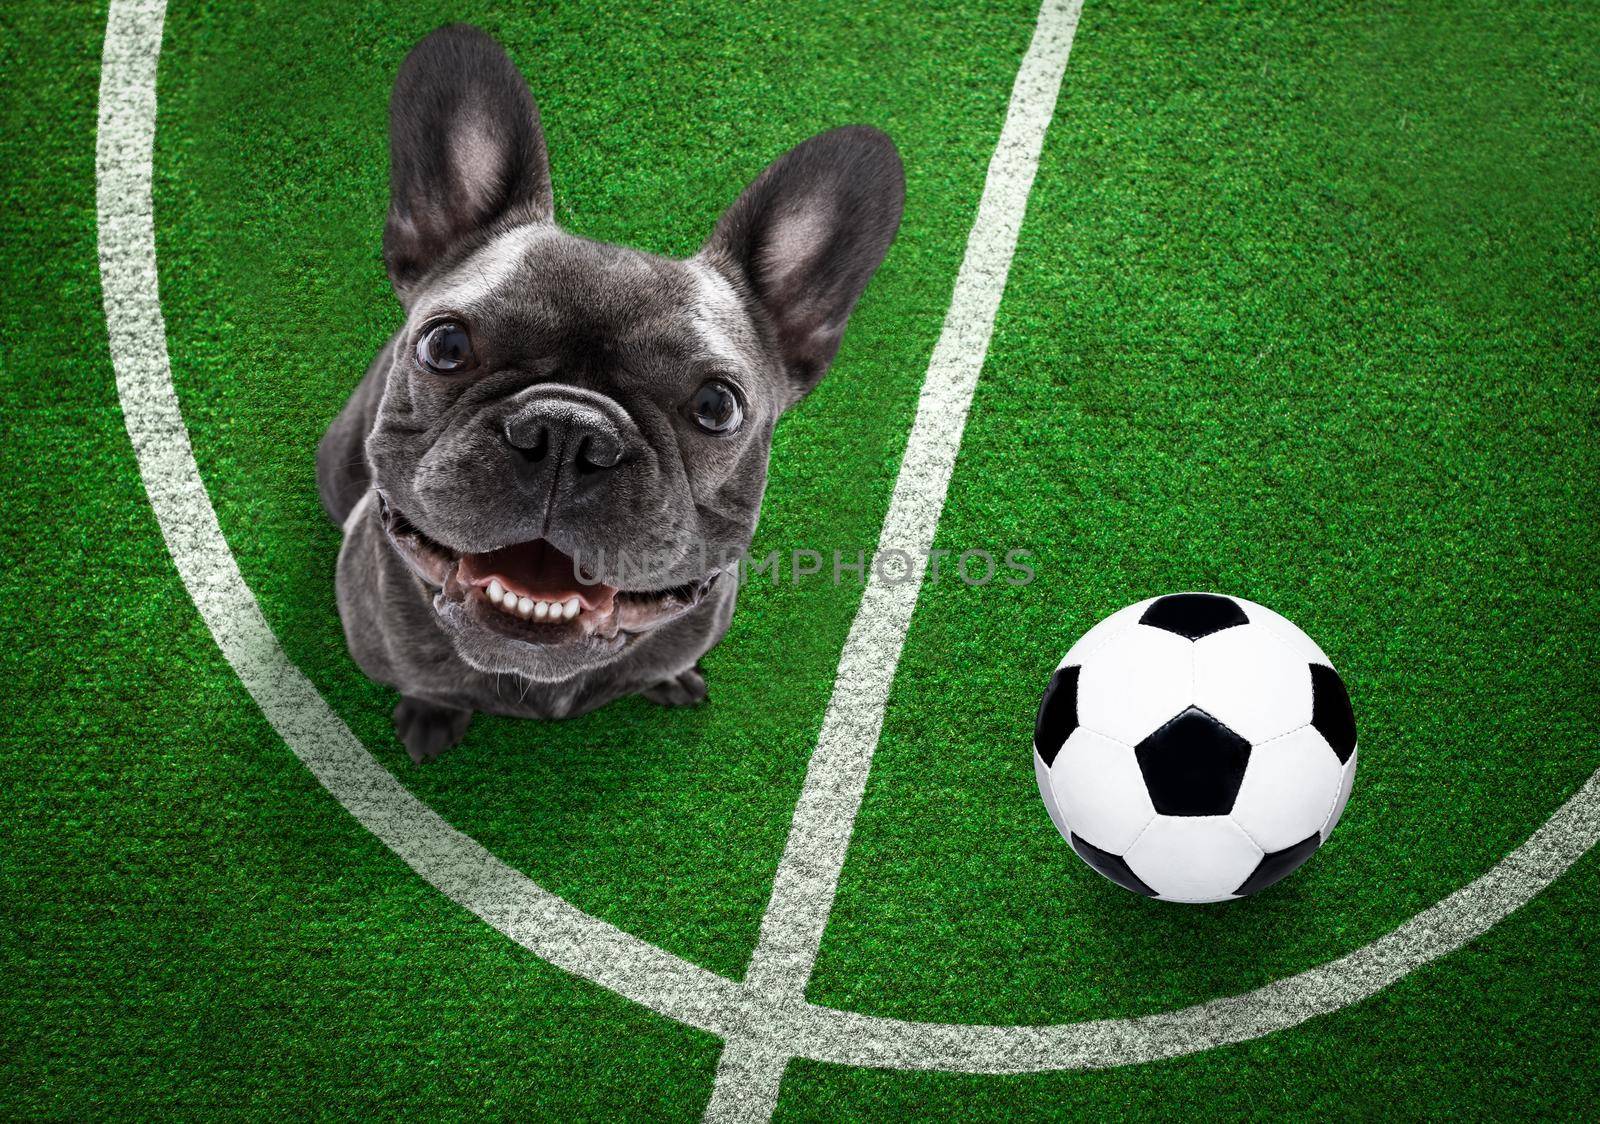 soccer player dog by Brosch